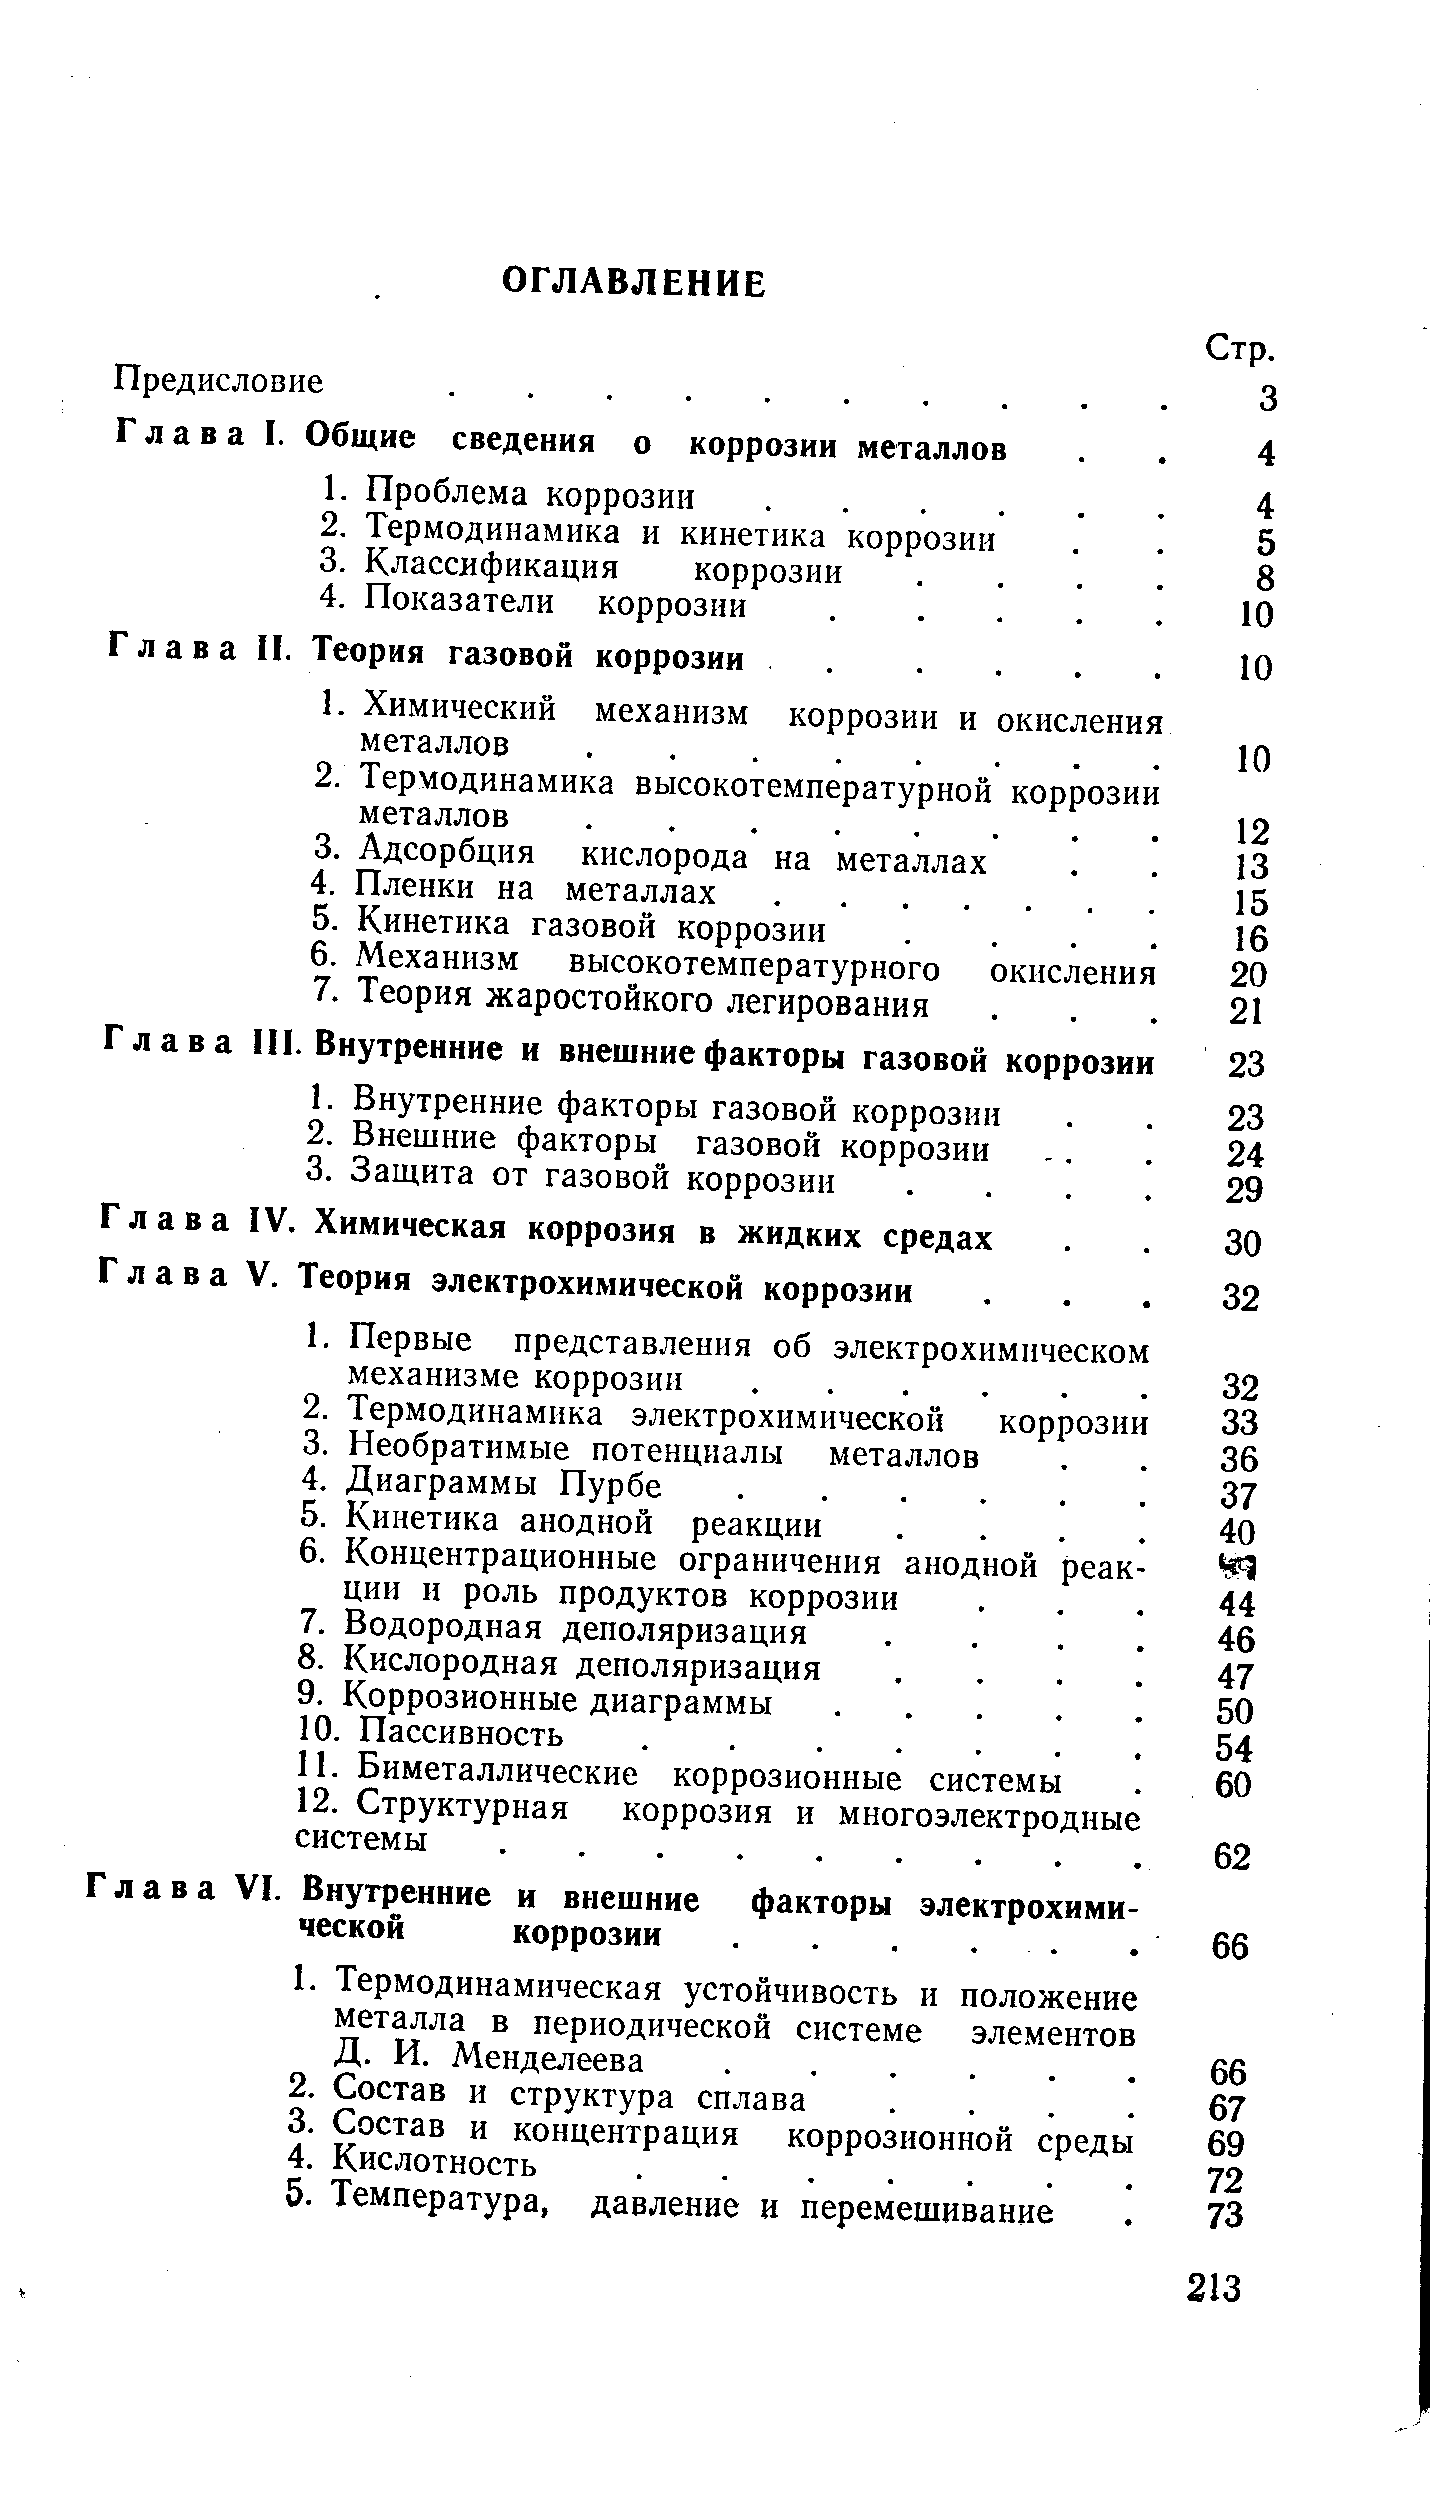 Глава VI. Внутренние и внешние факторы электрохими ческой коррозии .. 
